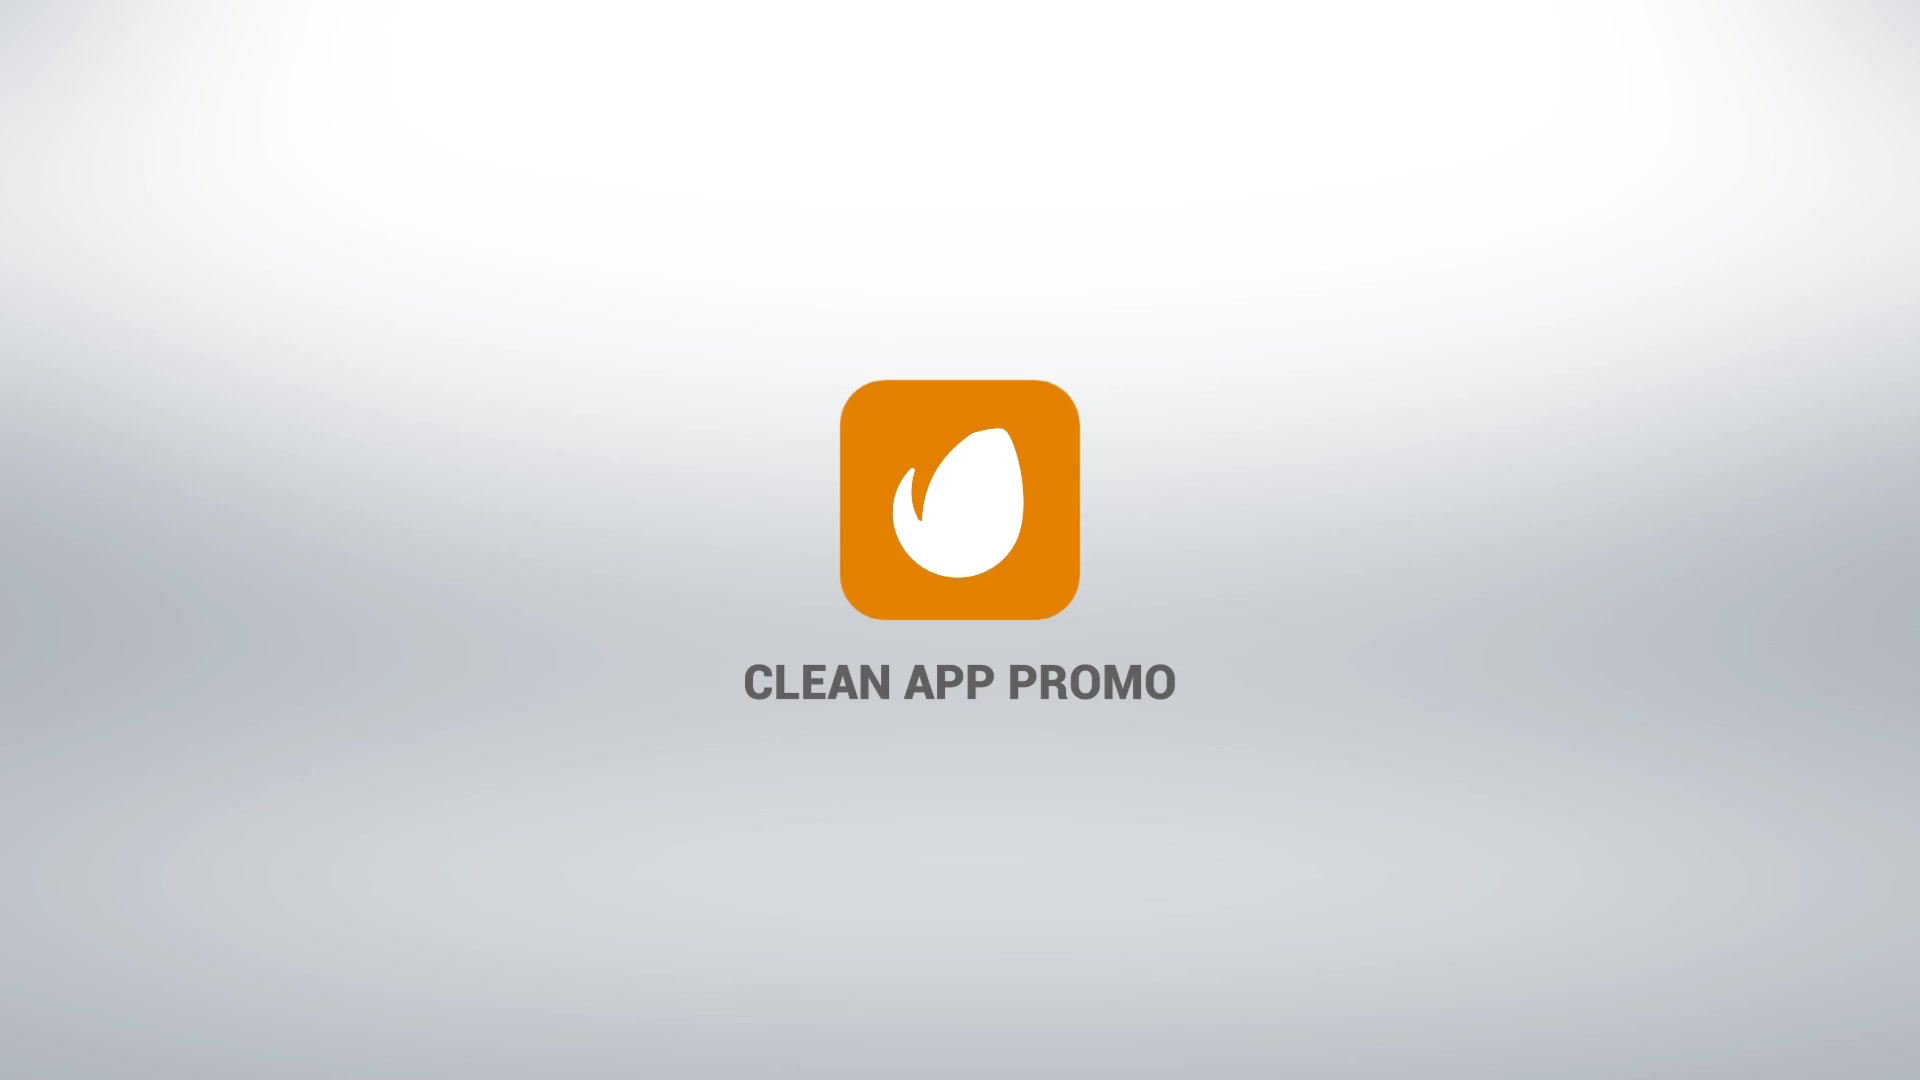 Clean App Promo Premiere Videohive 25961833 Premiere Pro Image 7